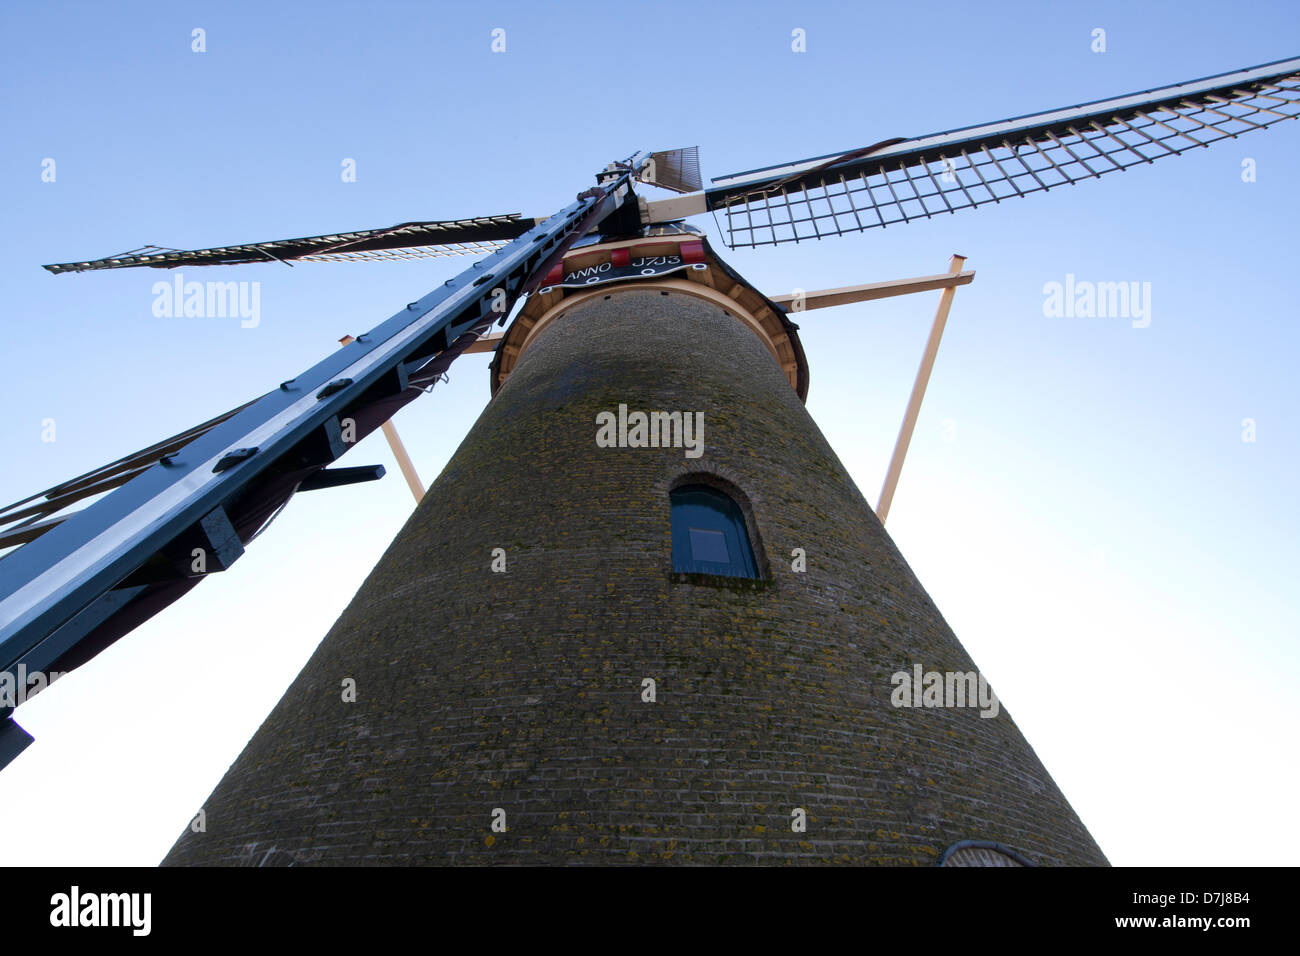 Monument moulin : 'Molen Kyck sur den Dyck' à Dordrecht, Pays-Bas Banque D'Images